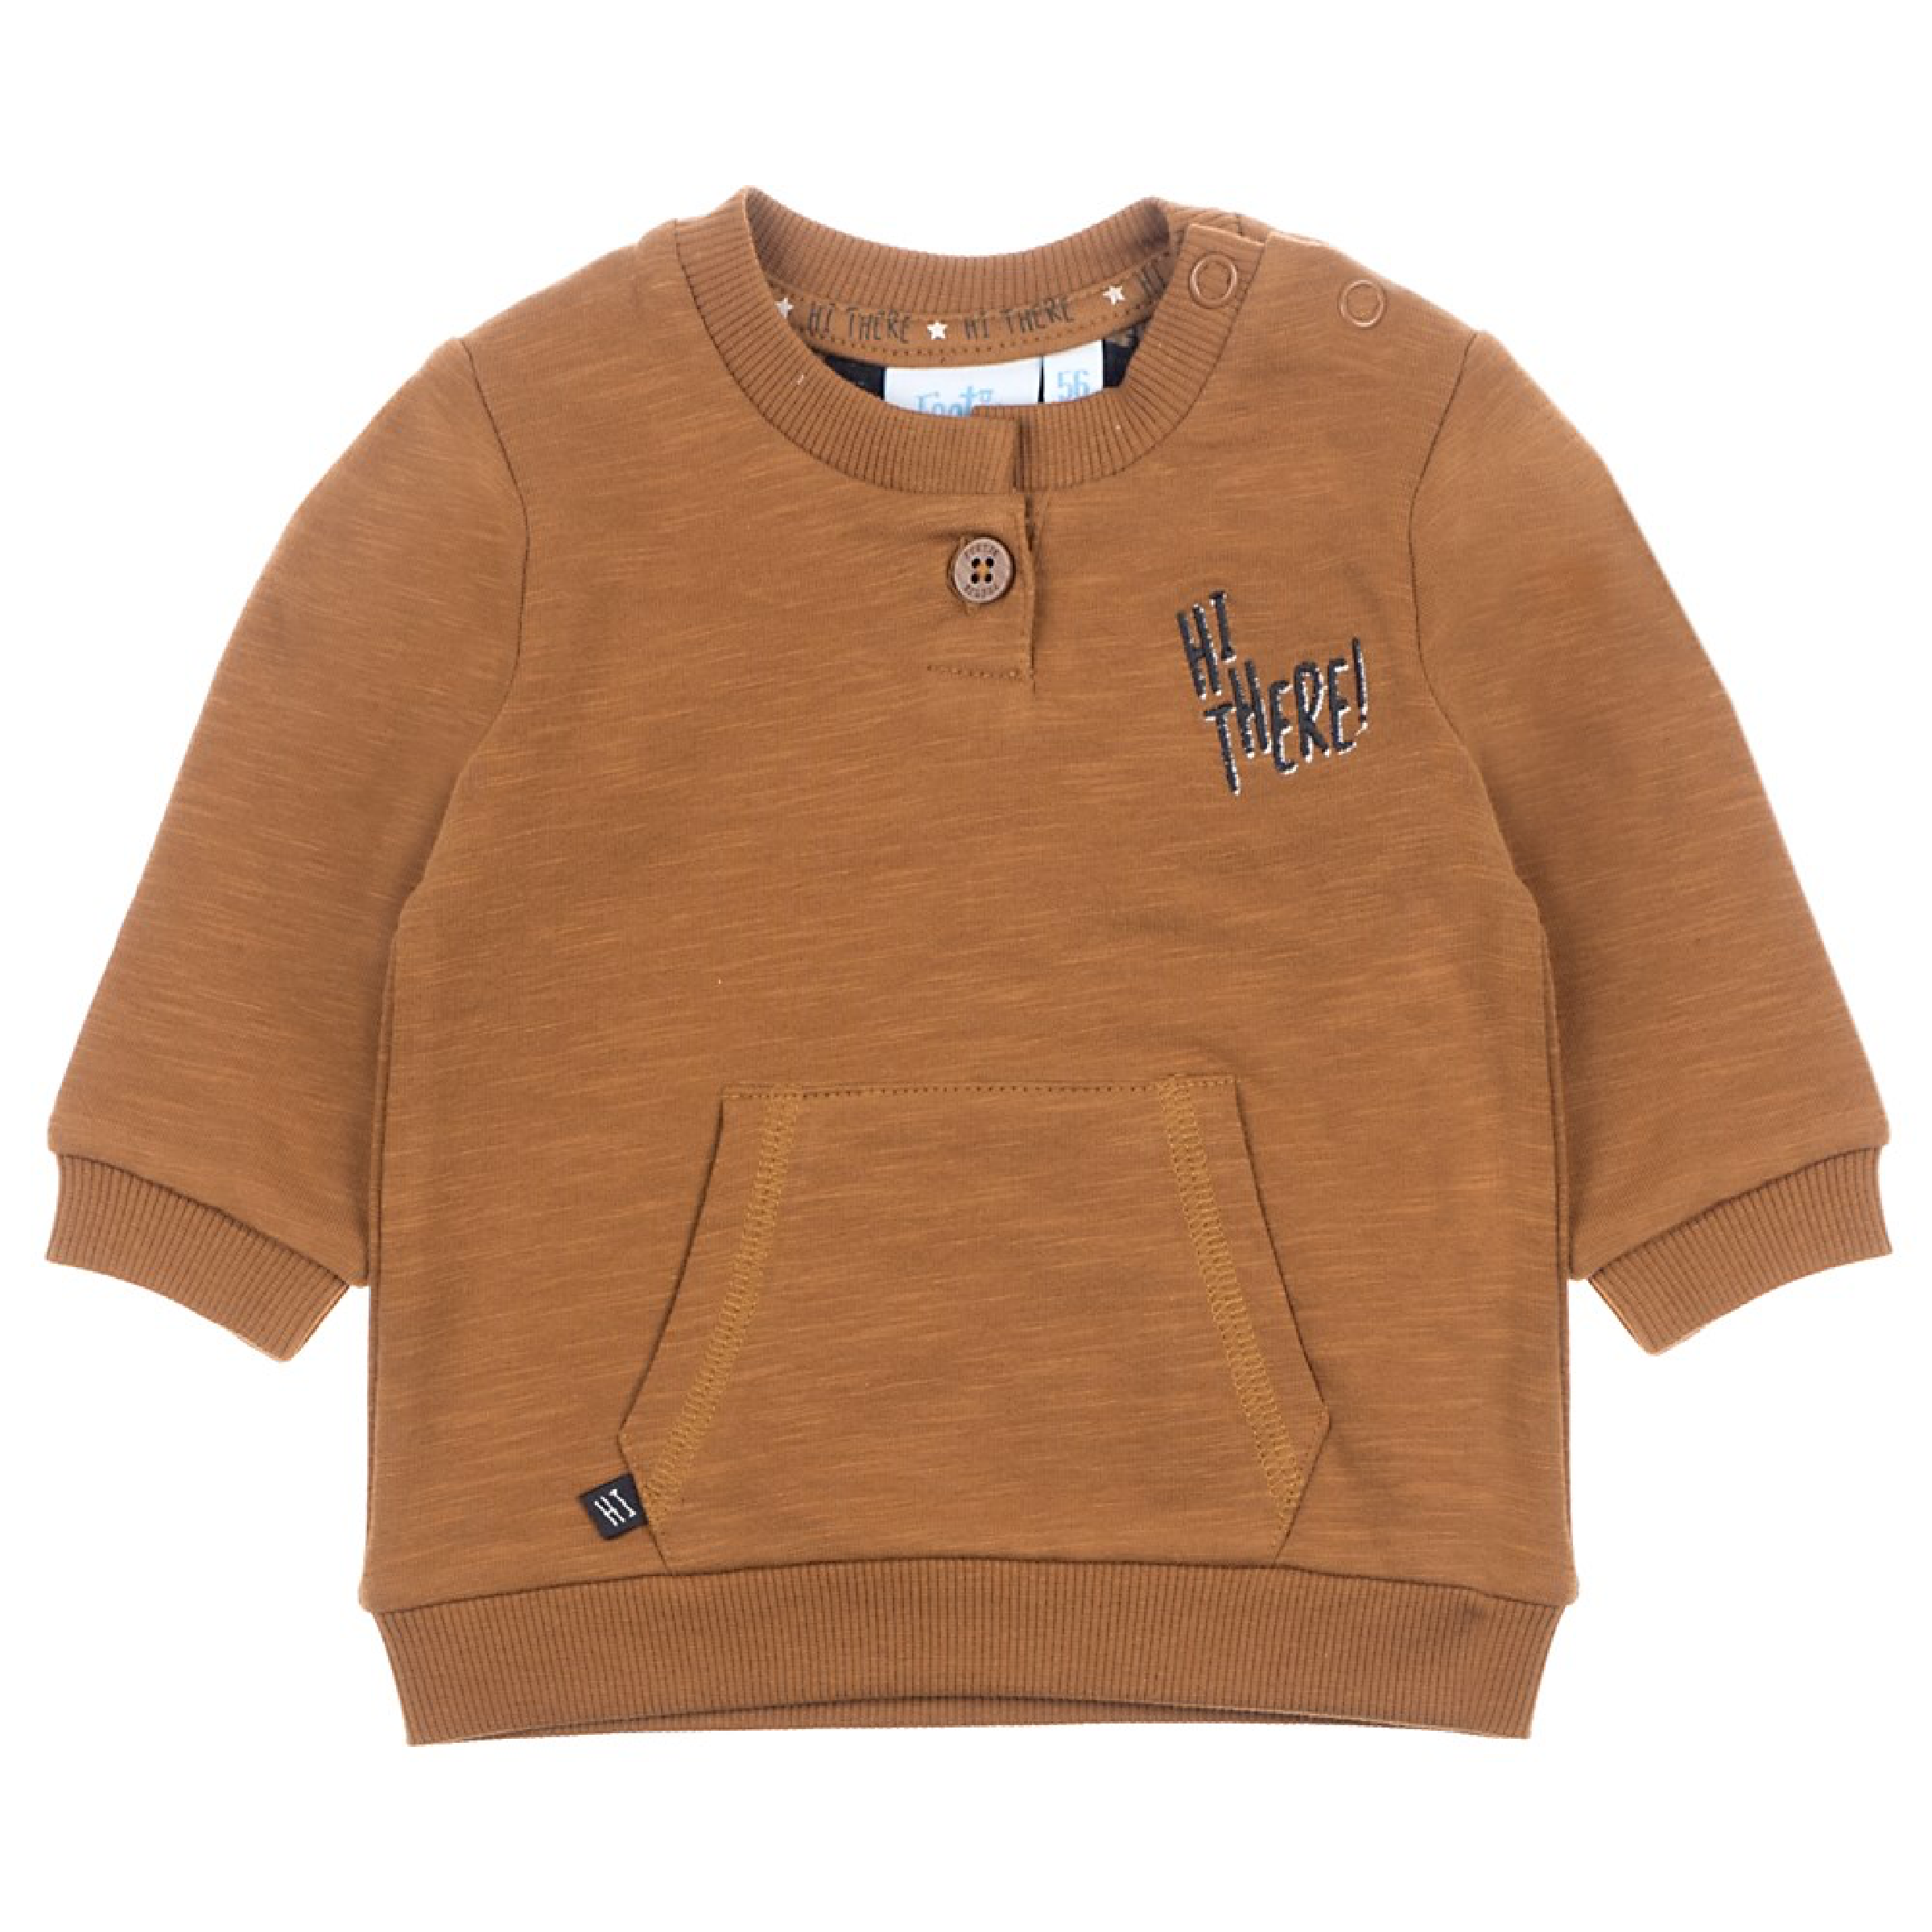 Jongens Sweater - Hi There van Feetje in de kleur Camel in maat 86.